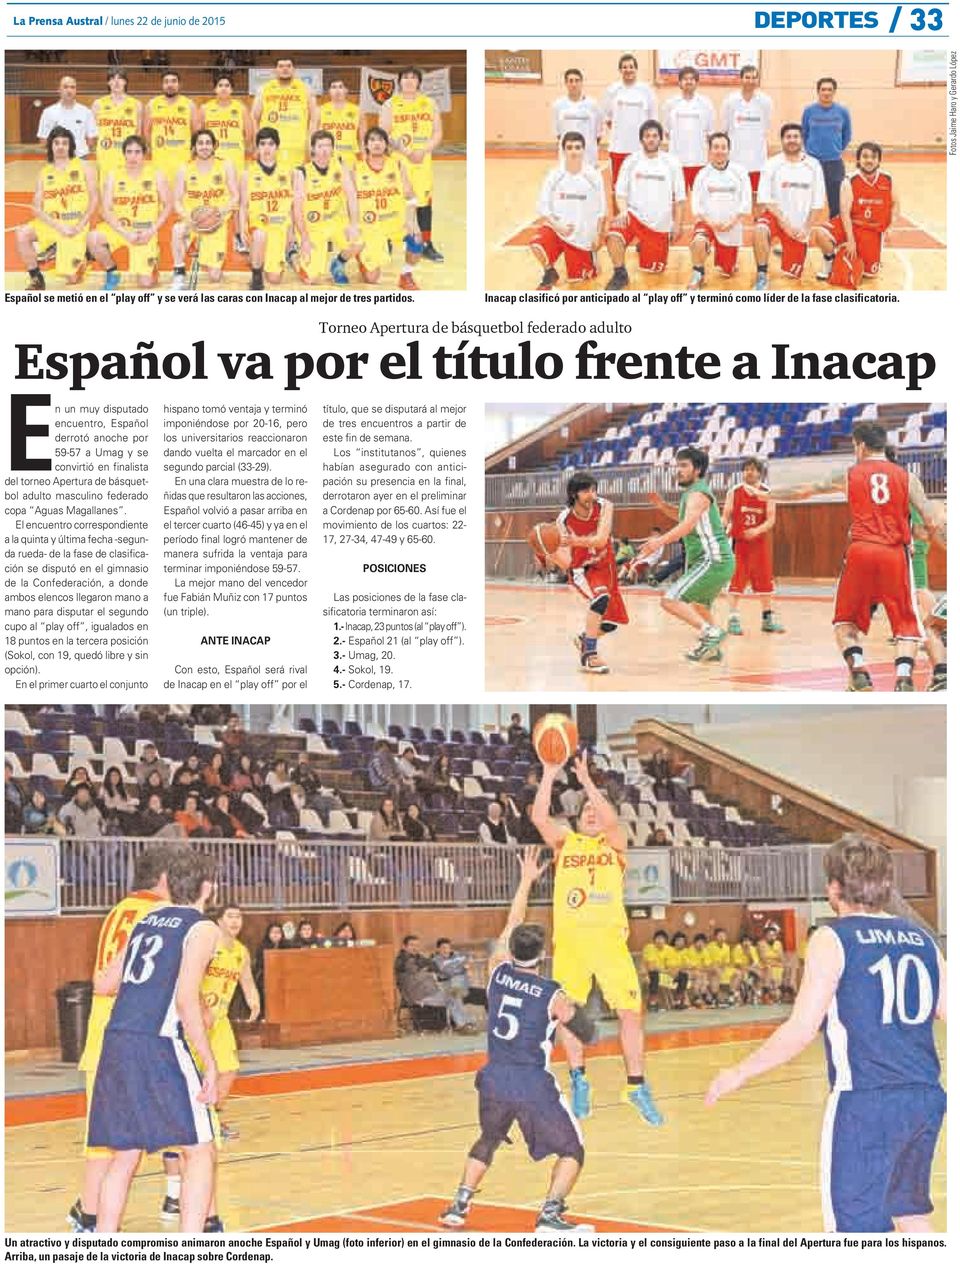 Torneo Apertura de básquetbol federado adulto Español va por el título frente a Inacap En un muy disputado encuentro, Español derrotó anoche por 59-57 a Umag y se convirtió en finalista del torneo